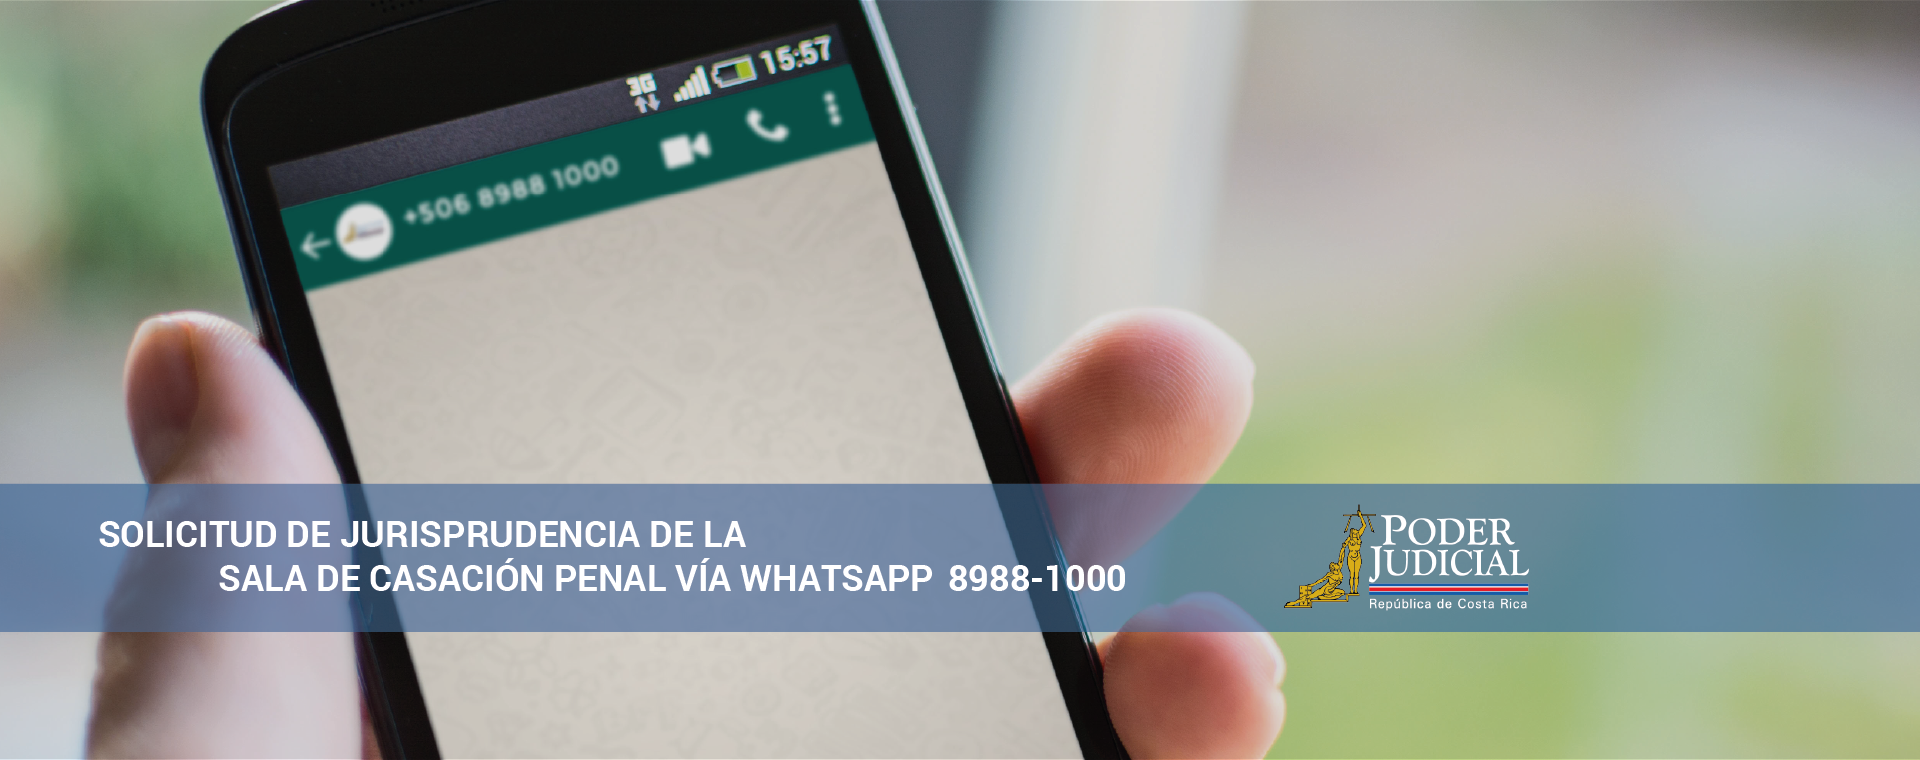 Contactar vía whatsapp para solicitar jurisprudencia de la sala de casación penal 